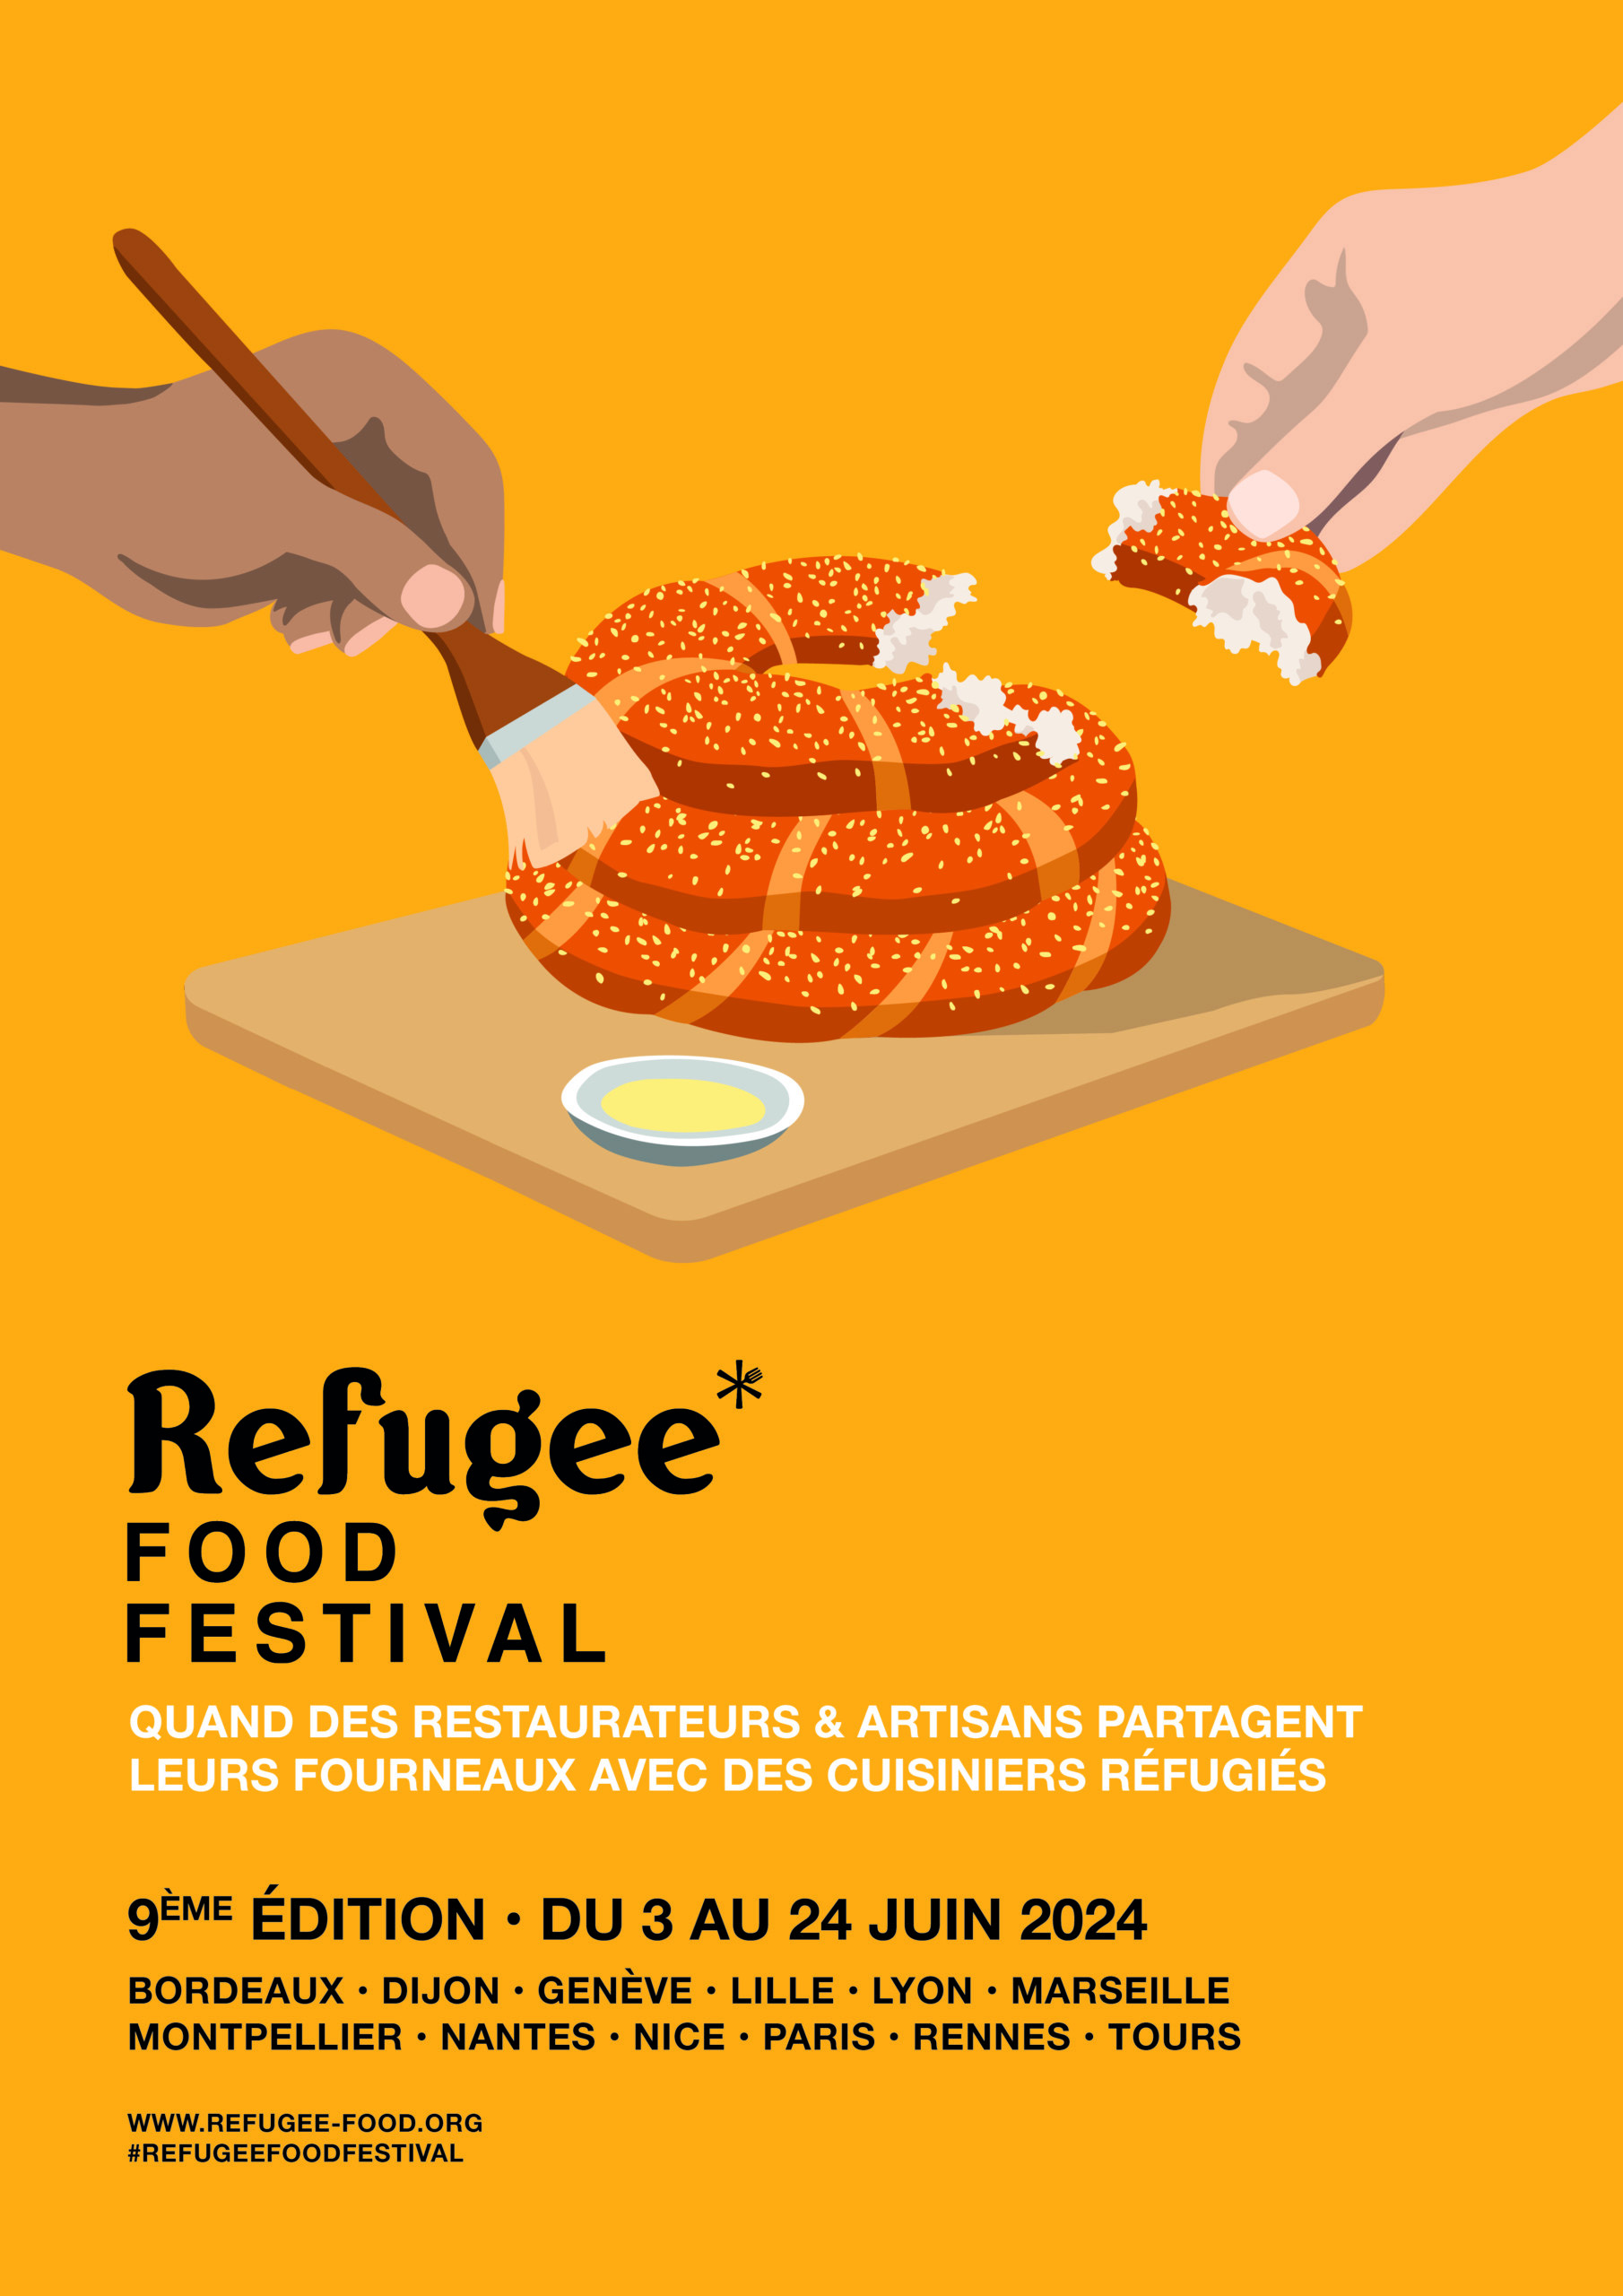 Chaque année, en juin, l'association Refugee Food fait son festival à travers la France.